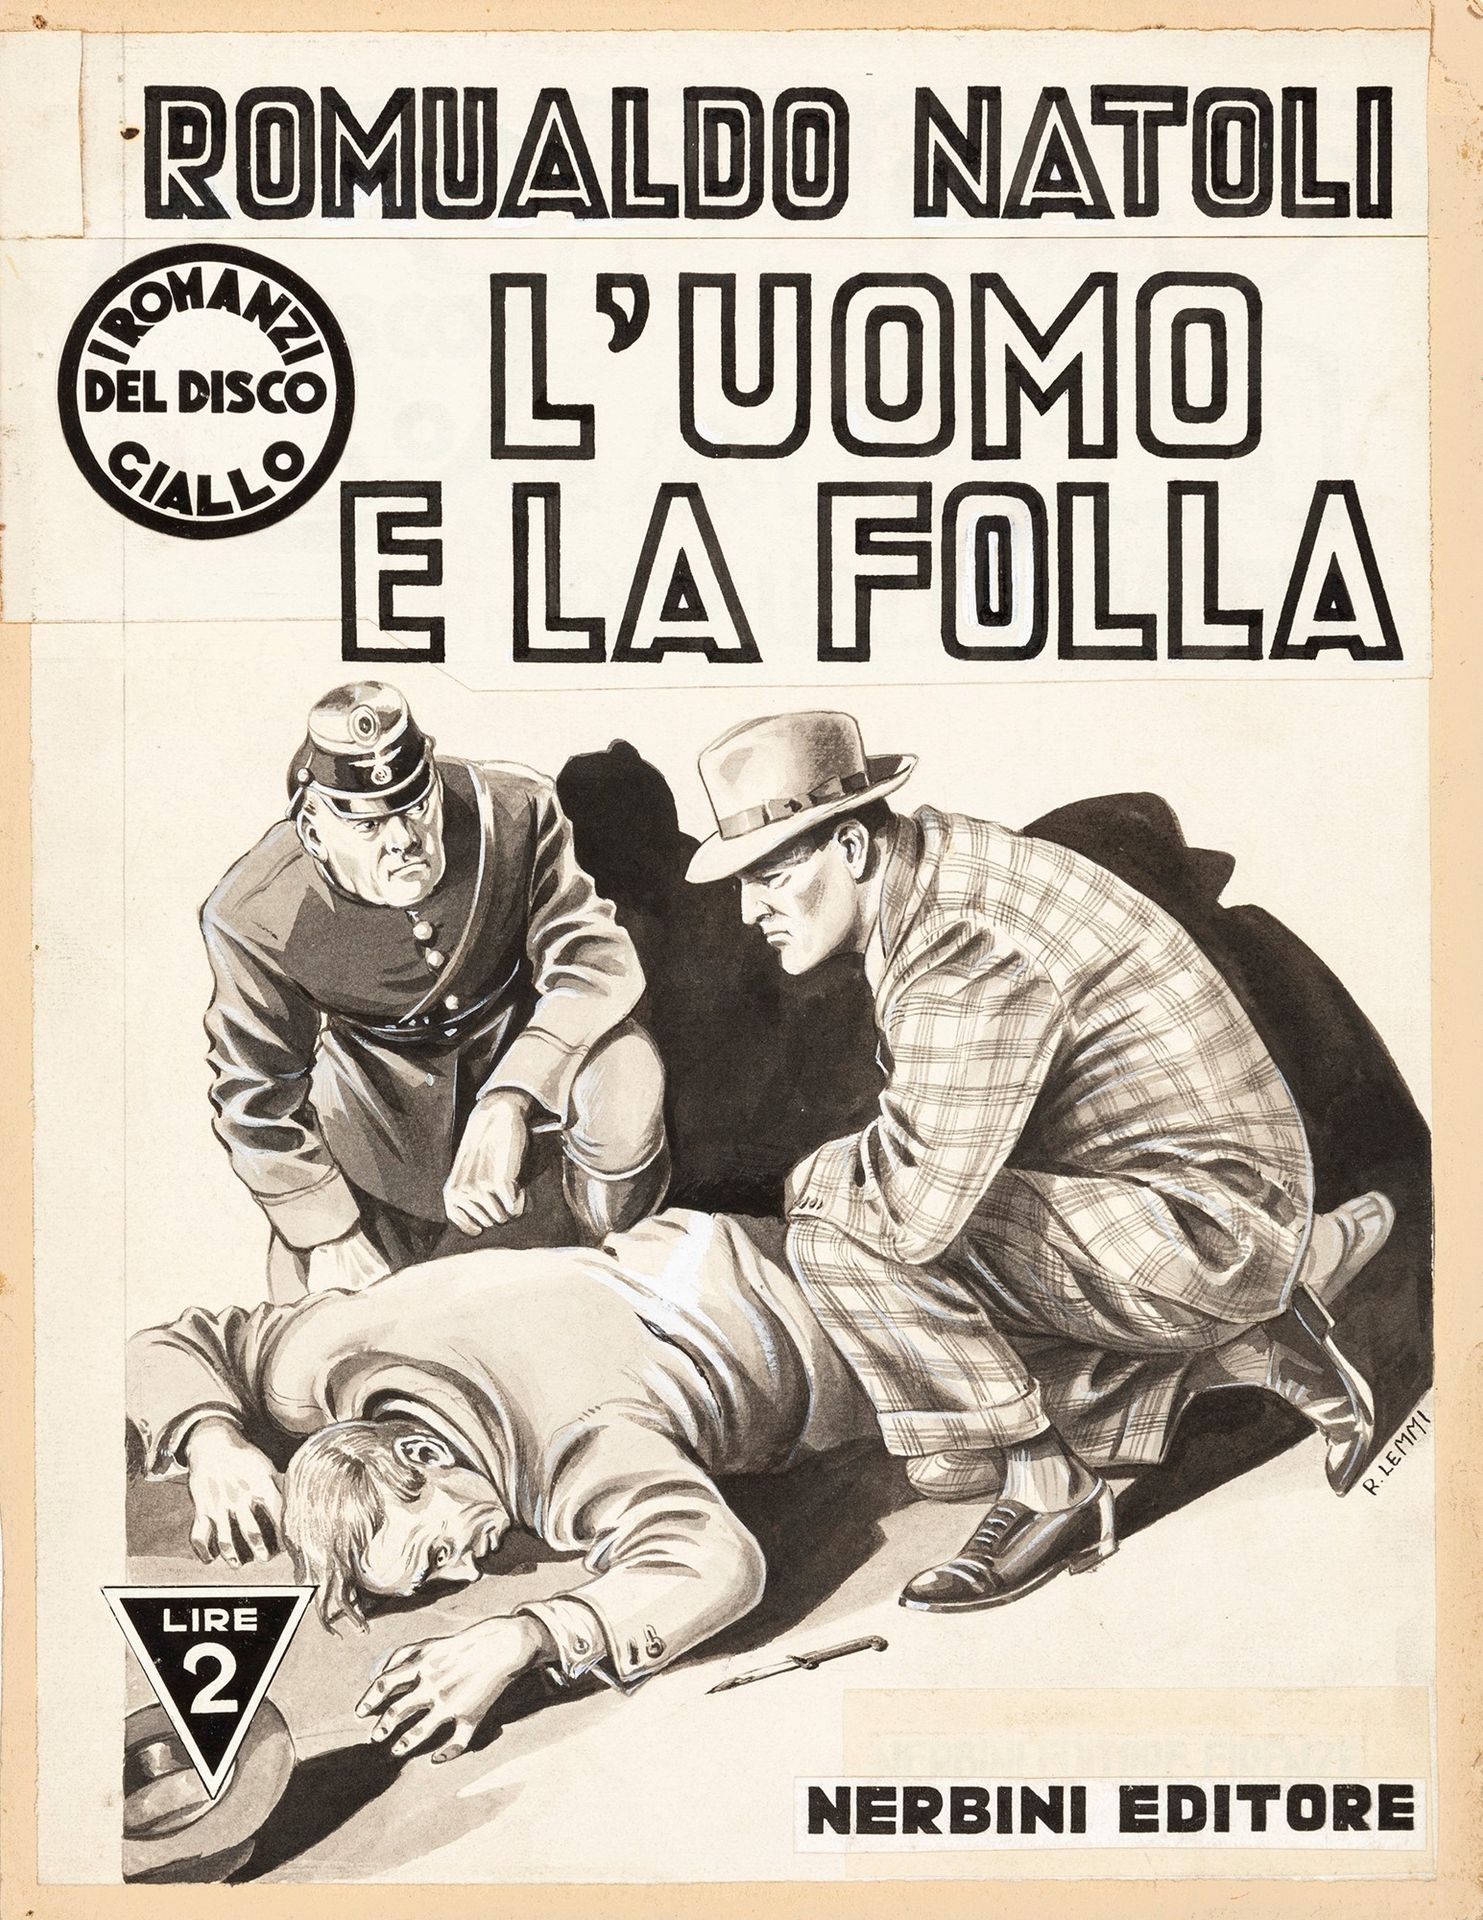 Roberto Lemmi L’uomo e la folla, 1941

pencil, ink and watercolor on thin cardbo&hellip;